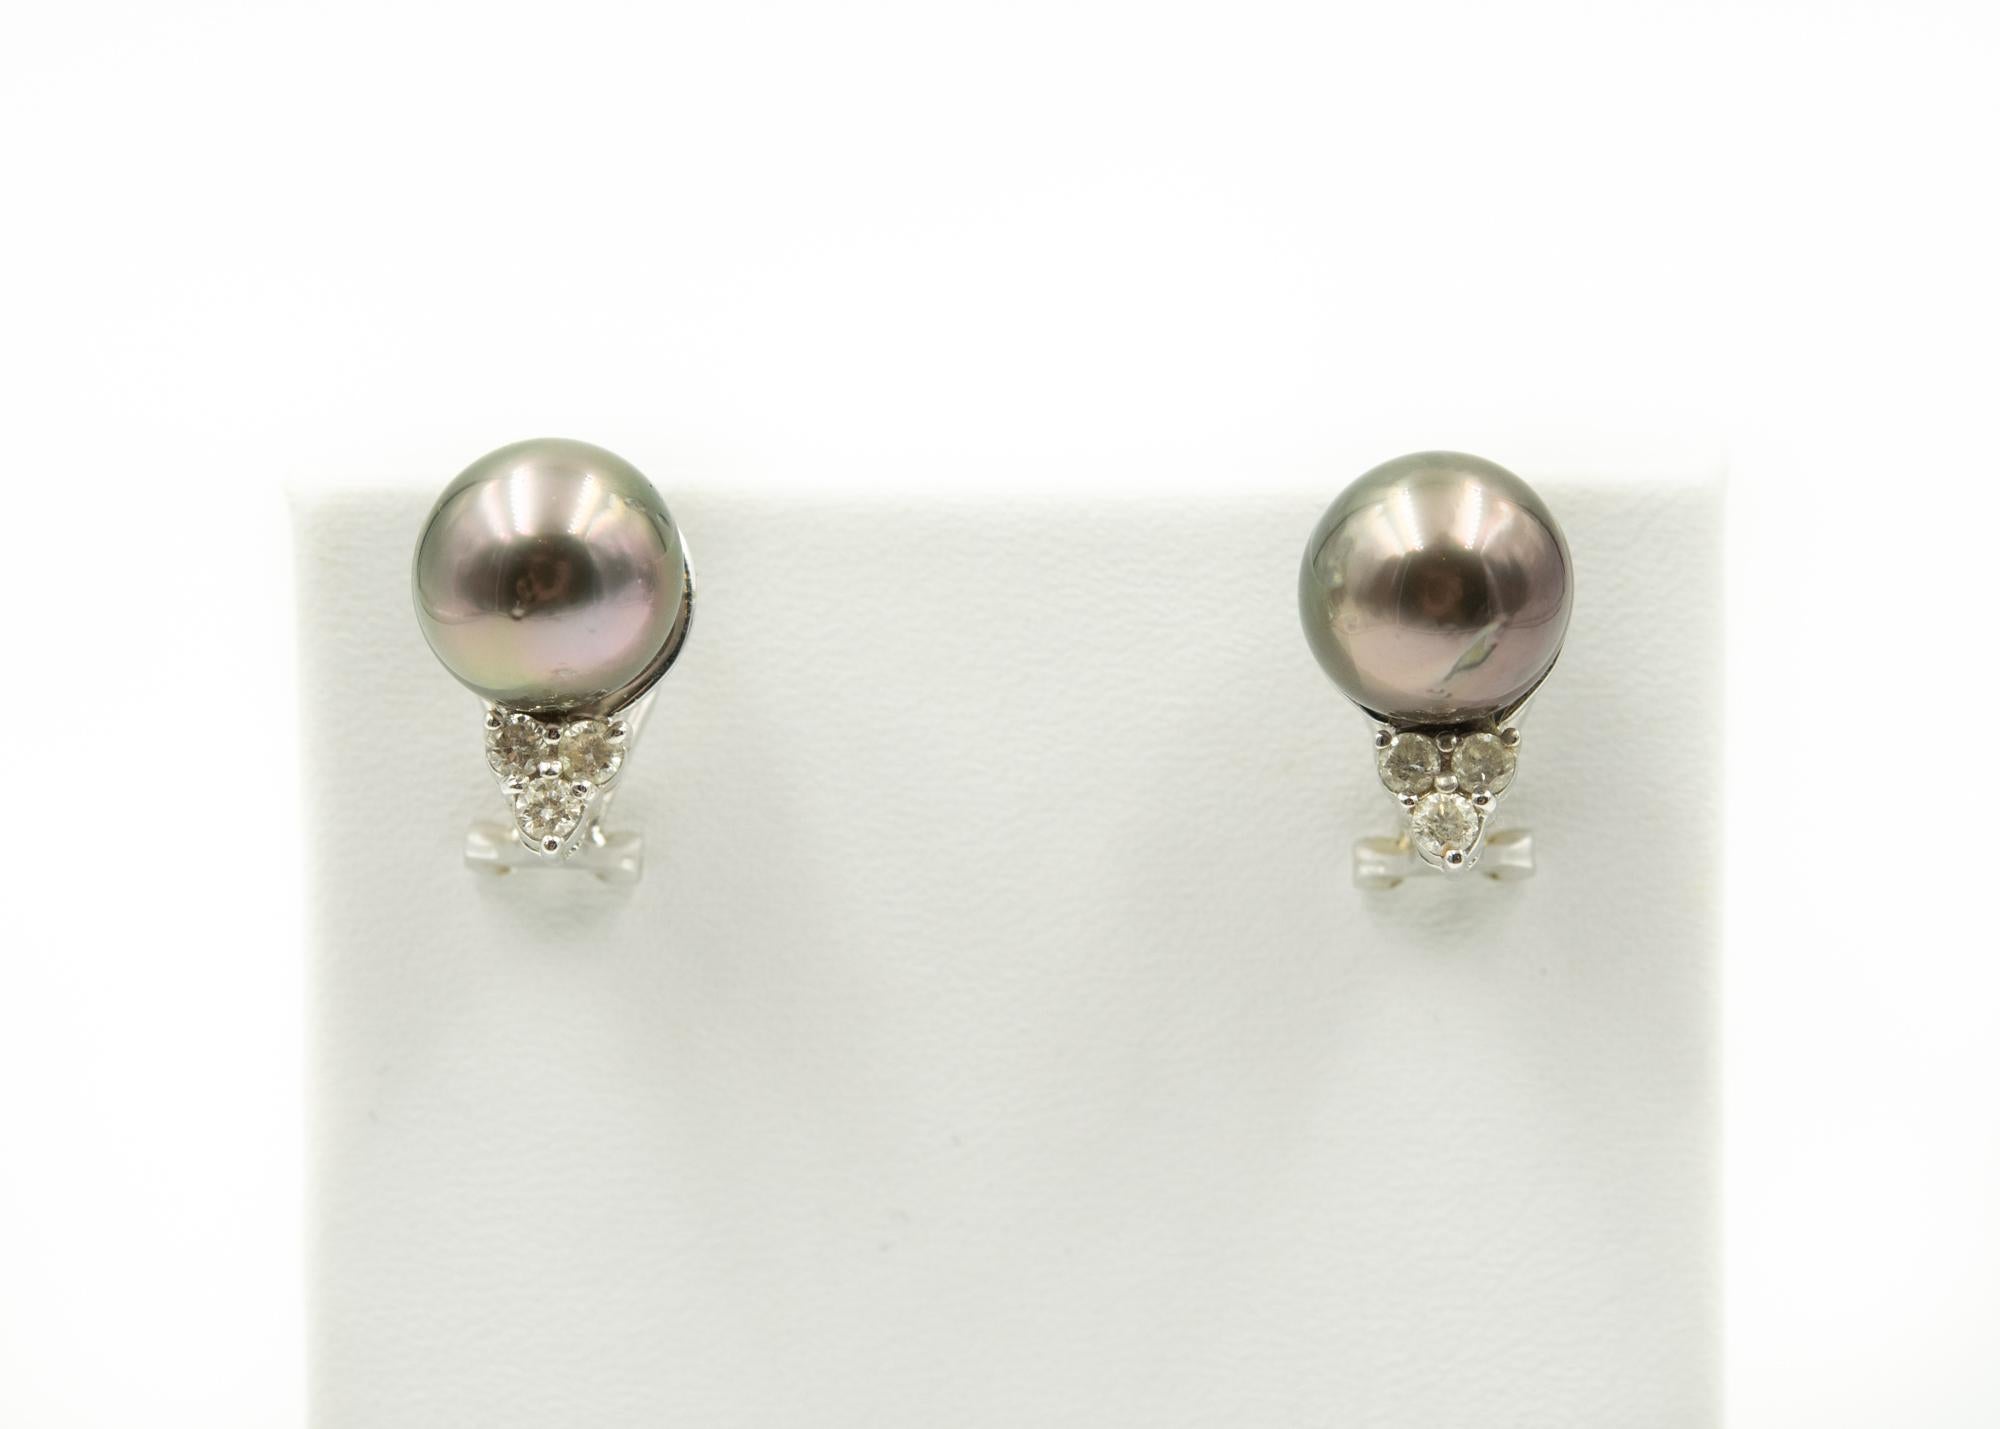 Graue Perlenohrstecker mit Diamanten von 0,19 Karat in 18 Karat Weißgold.  Die Rückseite ist ein Omega mit einem Pfosten.  Die Perlen sind etwa 10,68 mm groß - sie haben einen schönen Glanz und einige Schönheitsfehler.